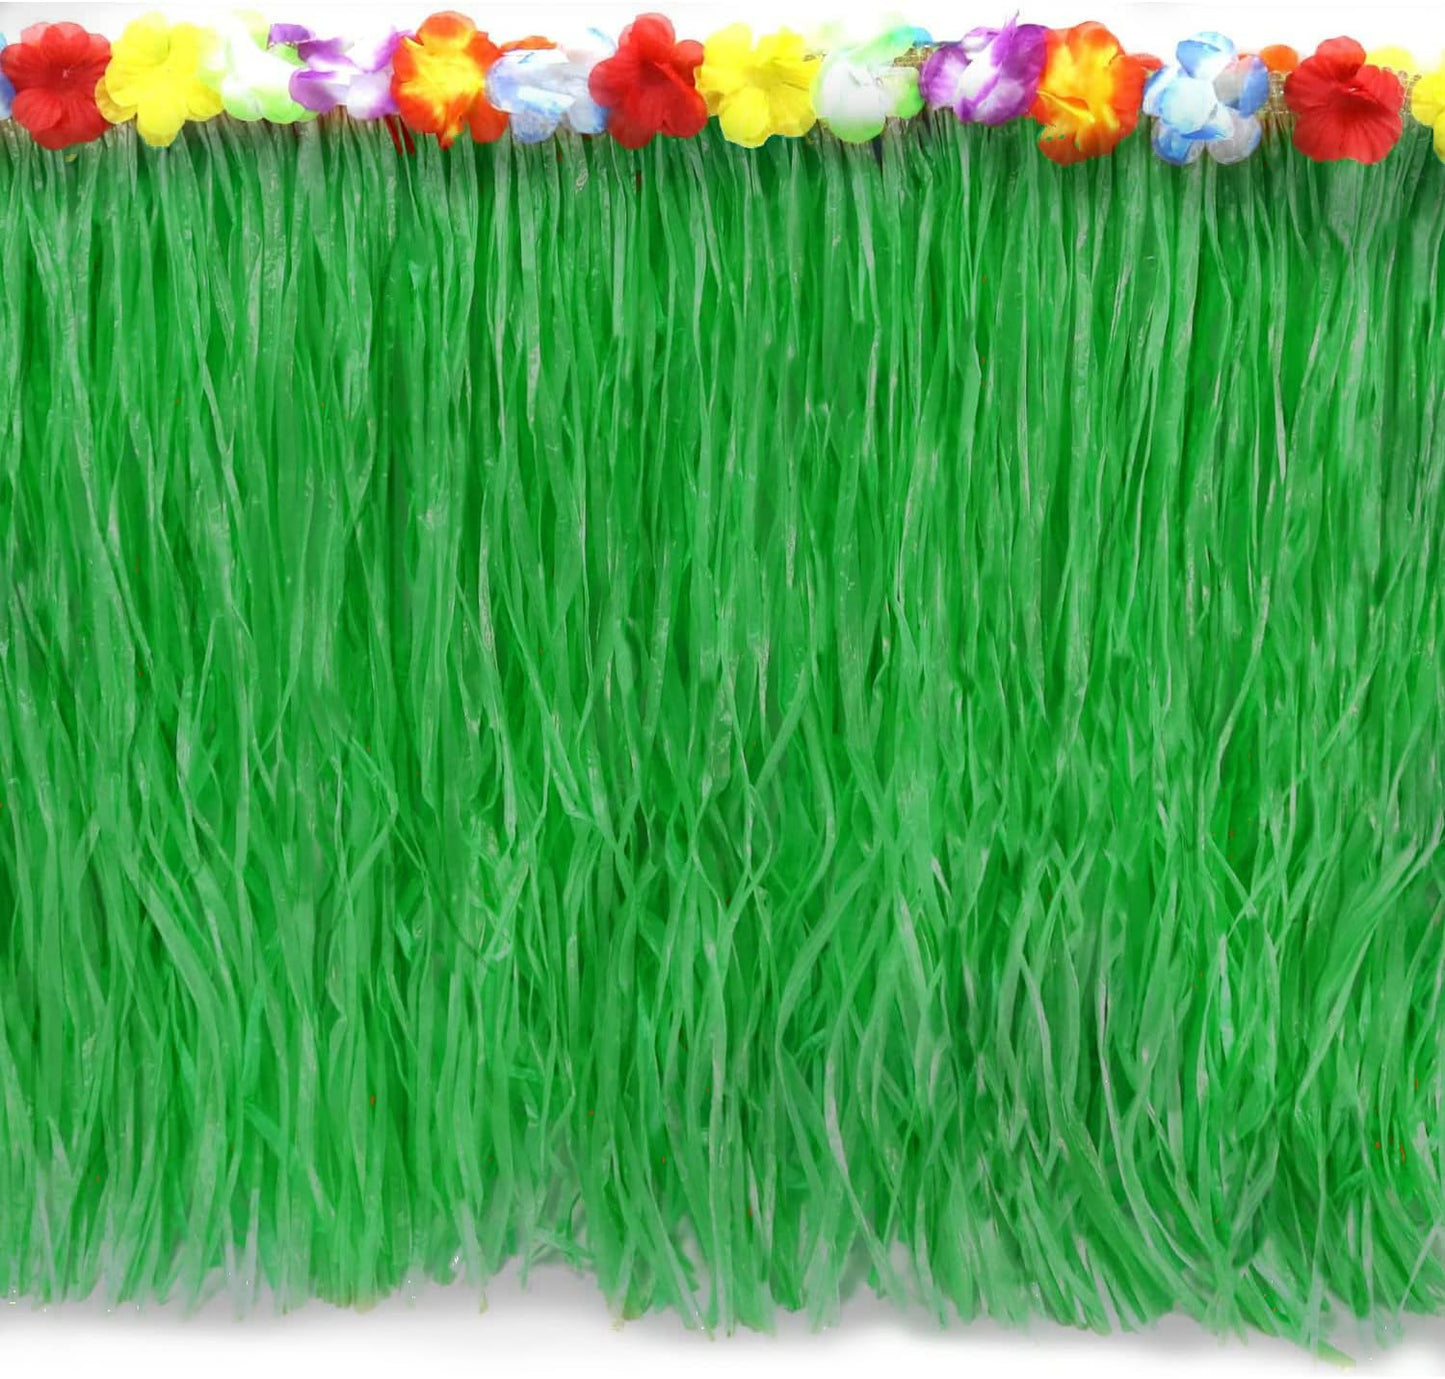 GIFTEXPRESS Luau Green Grass Table Skirt, 108" * 29"